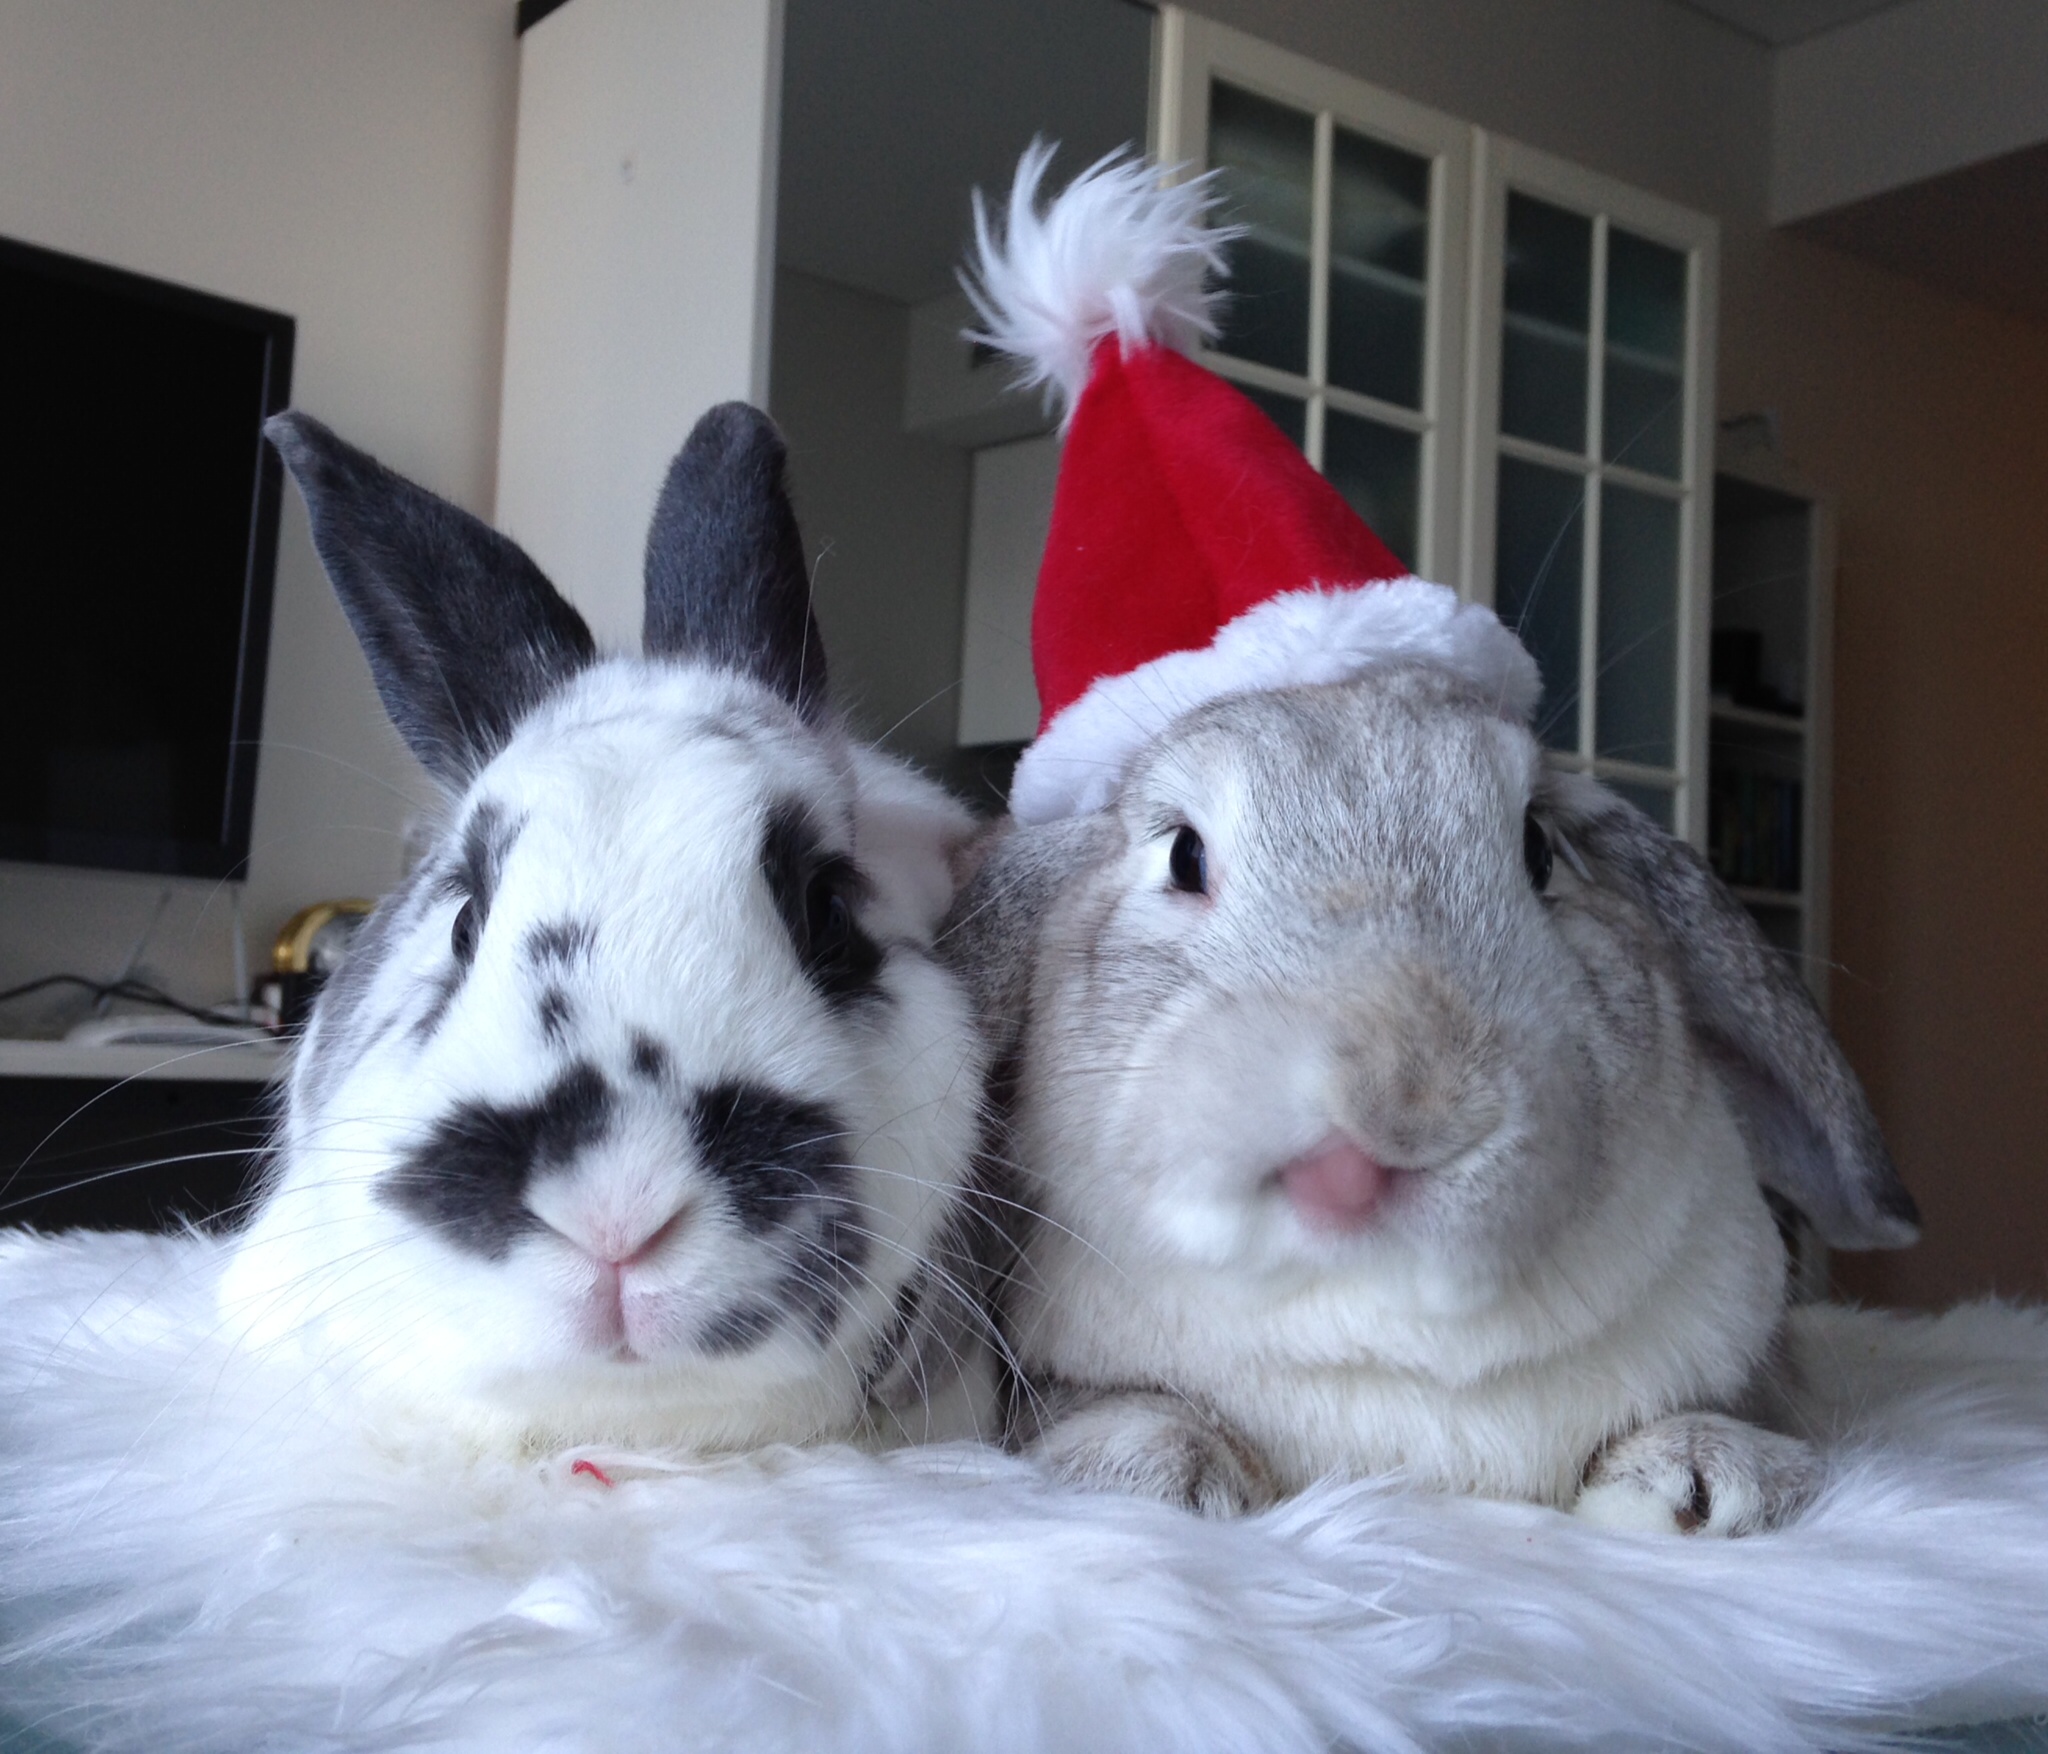 Diva Bunny Doesn't Share the Santa Hat 4